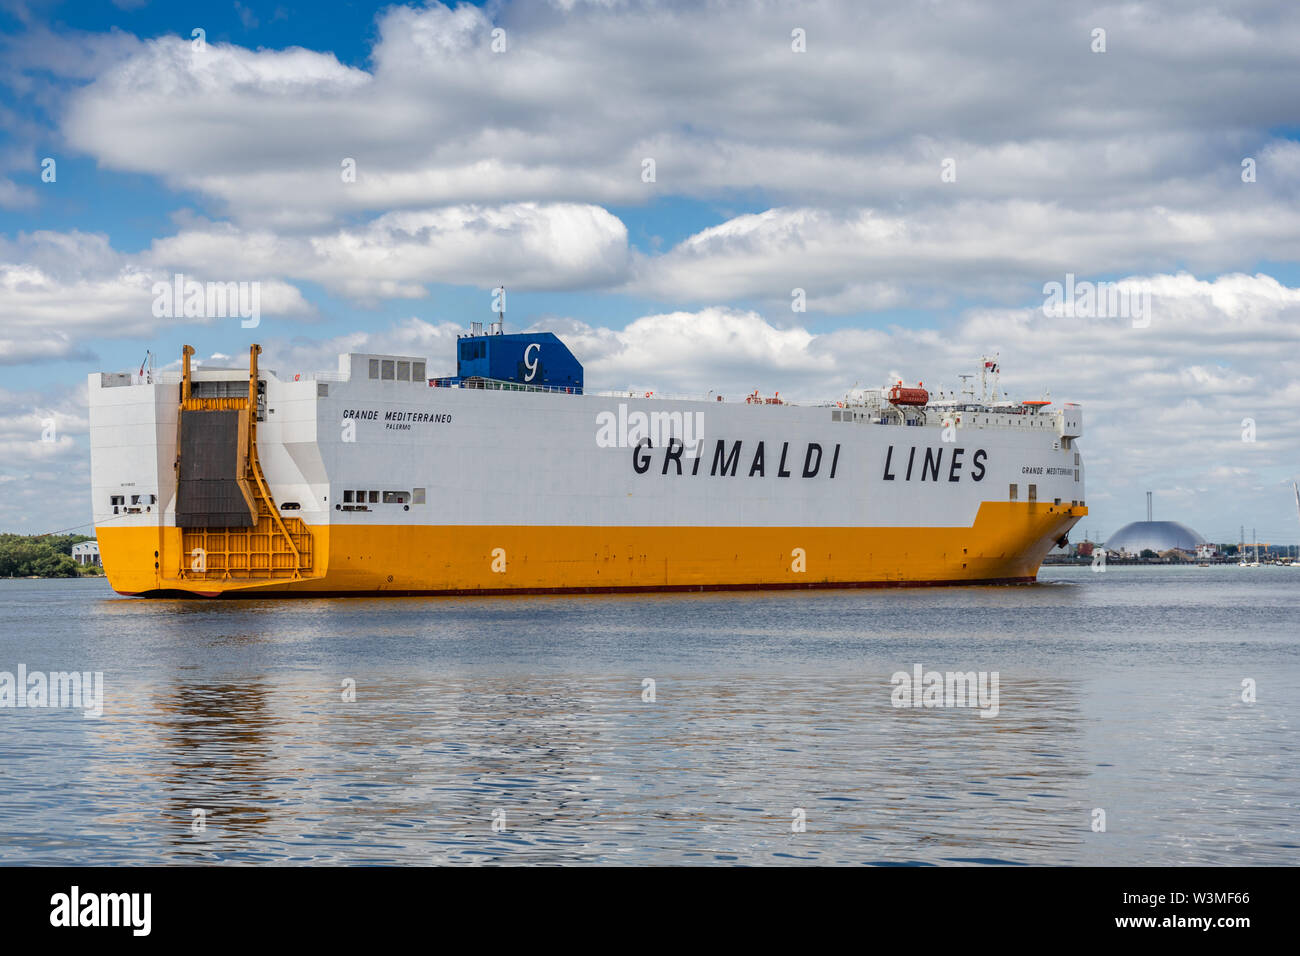 Les Grimaldi Lines Grande Mediterraneo véhicule / voiture navire transporteur arrivant à Southampton Water au Port de Southampton, England, UK Banque D'Images